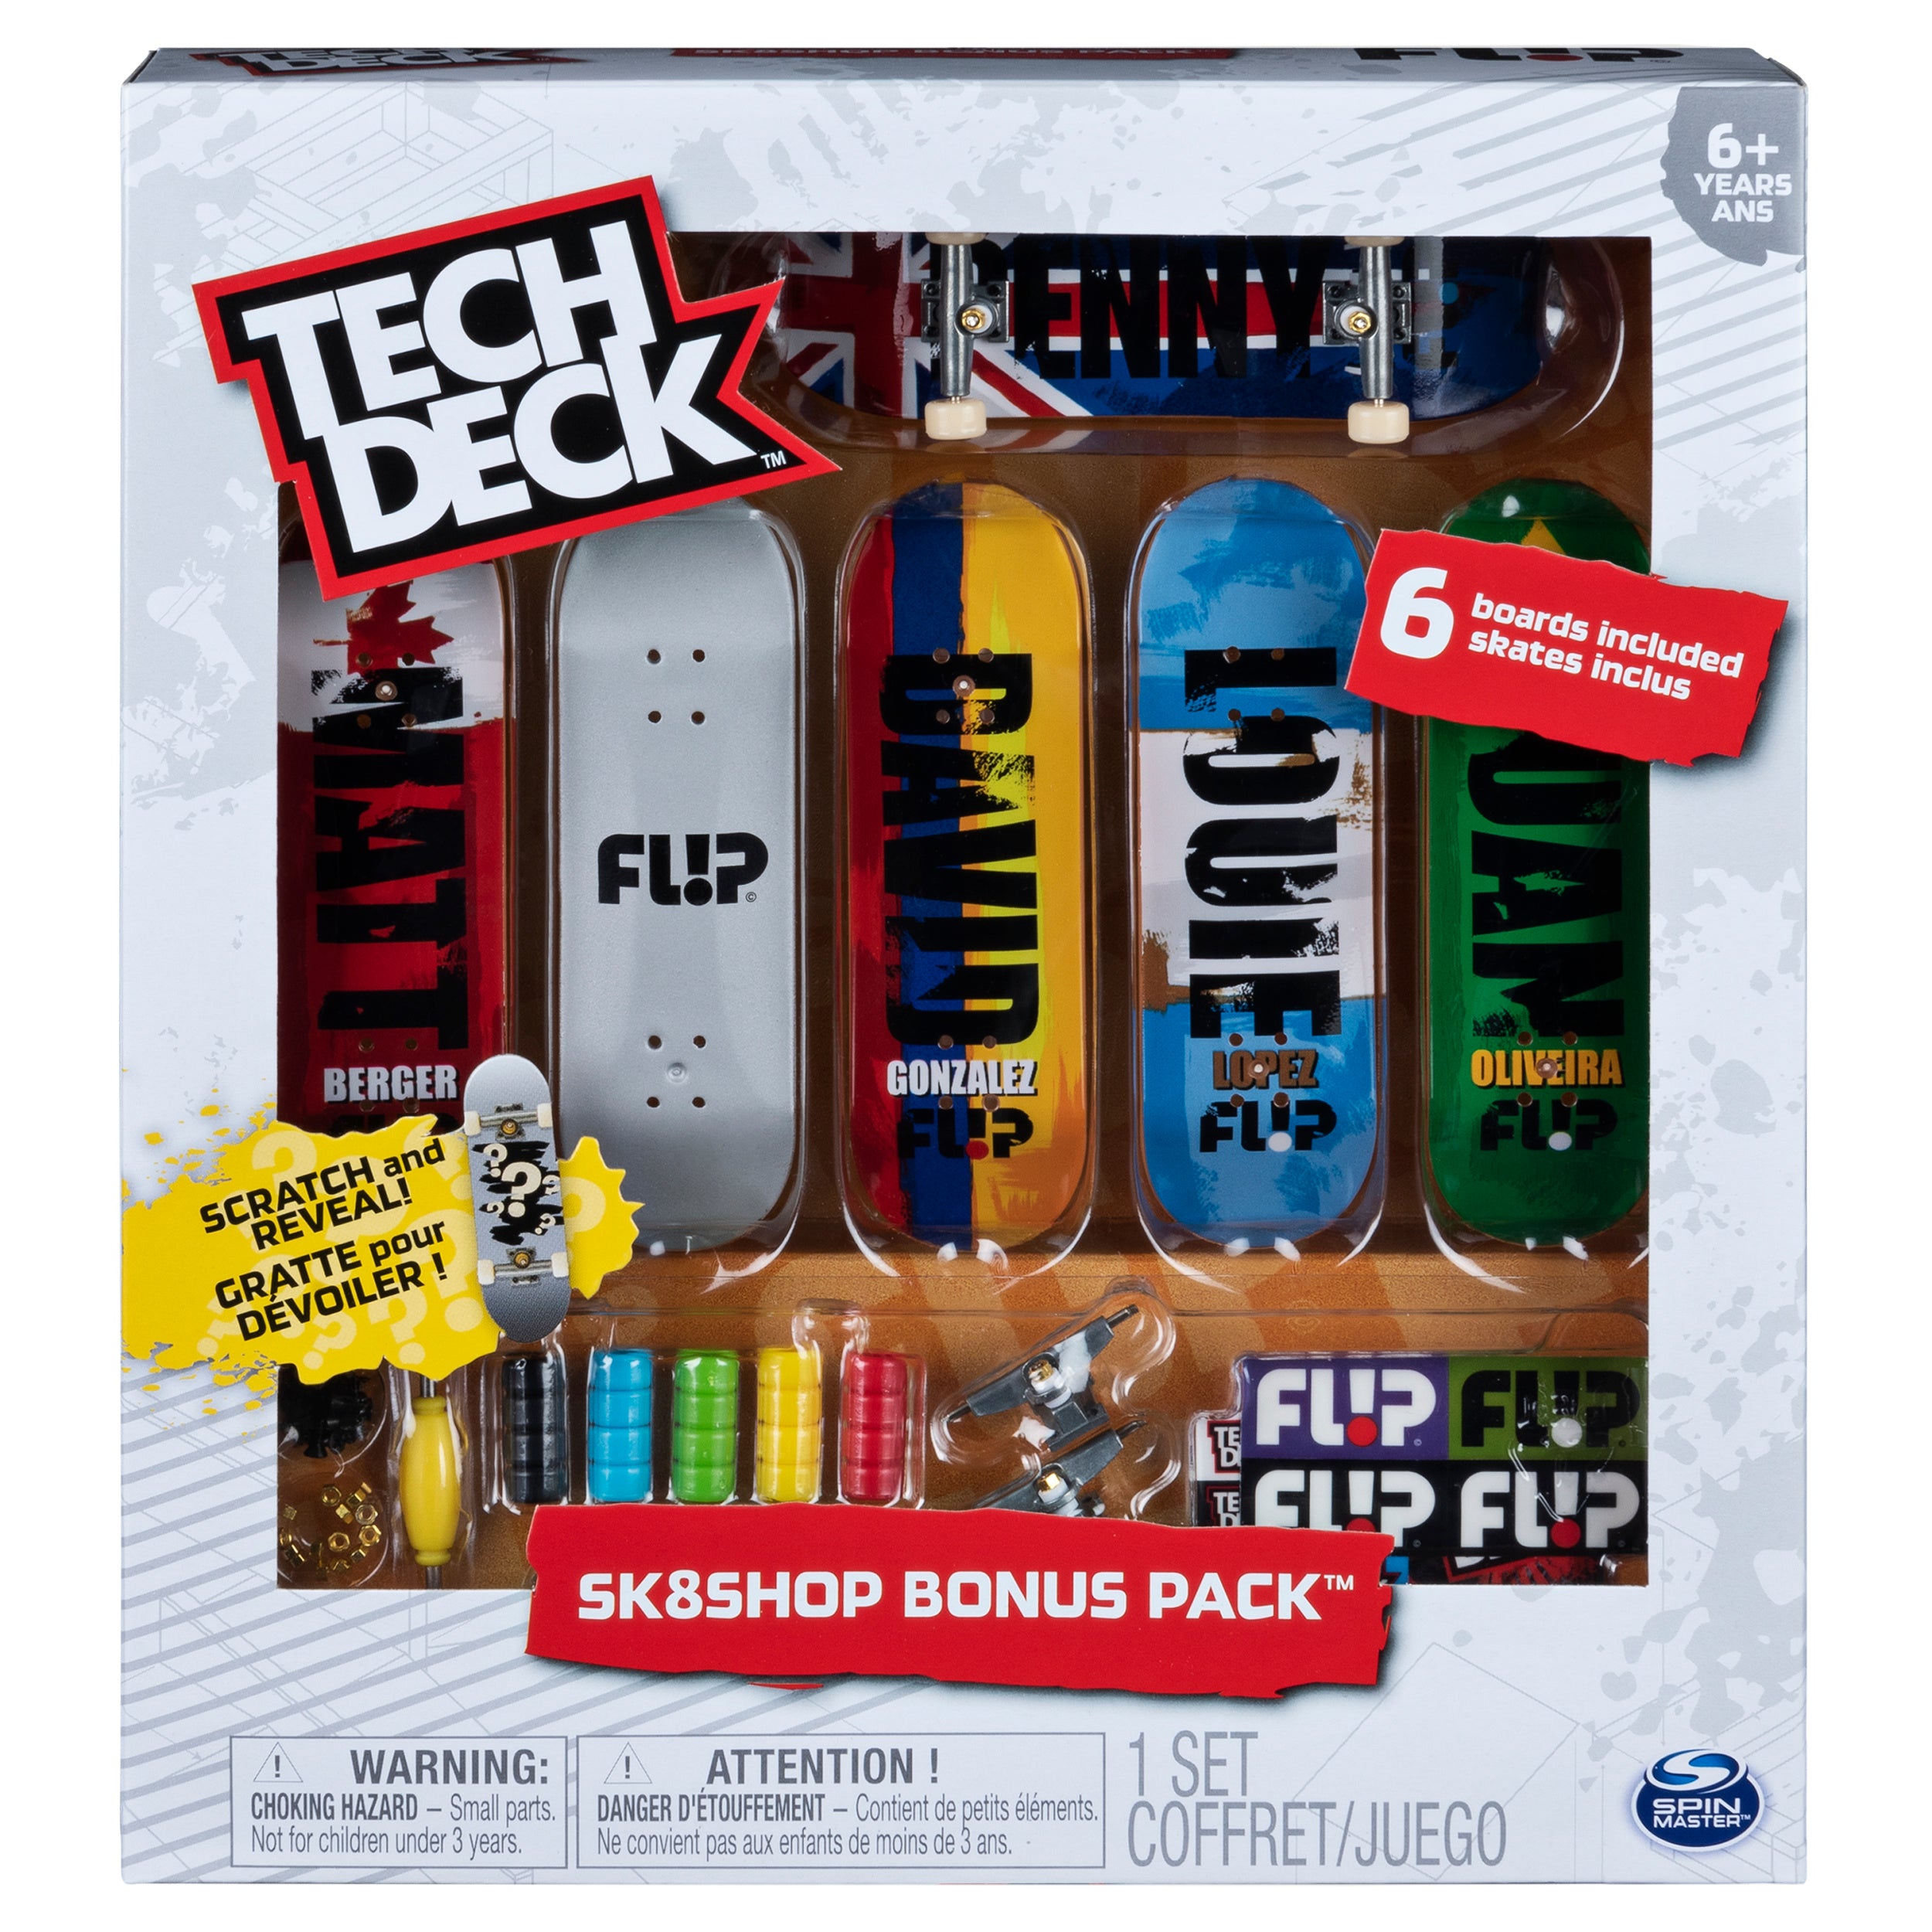 Tech Deck Sk8shop Bonus Pack